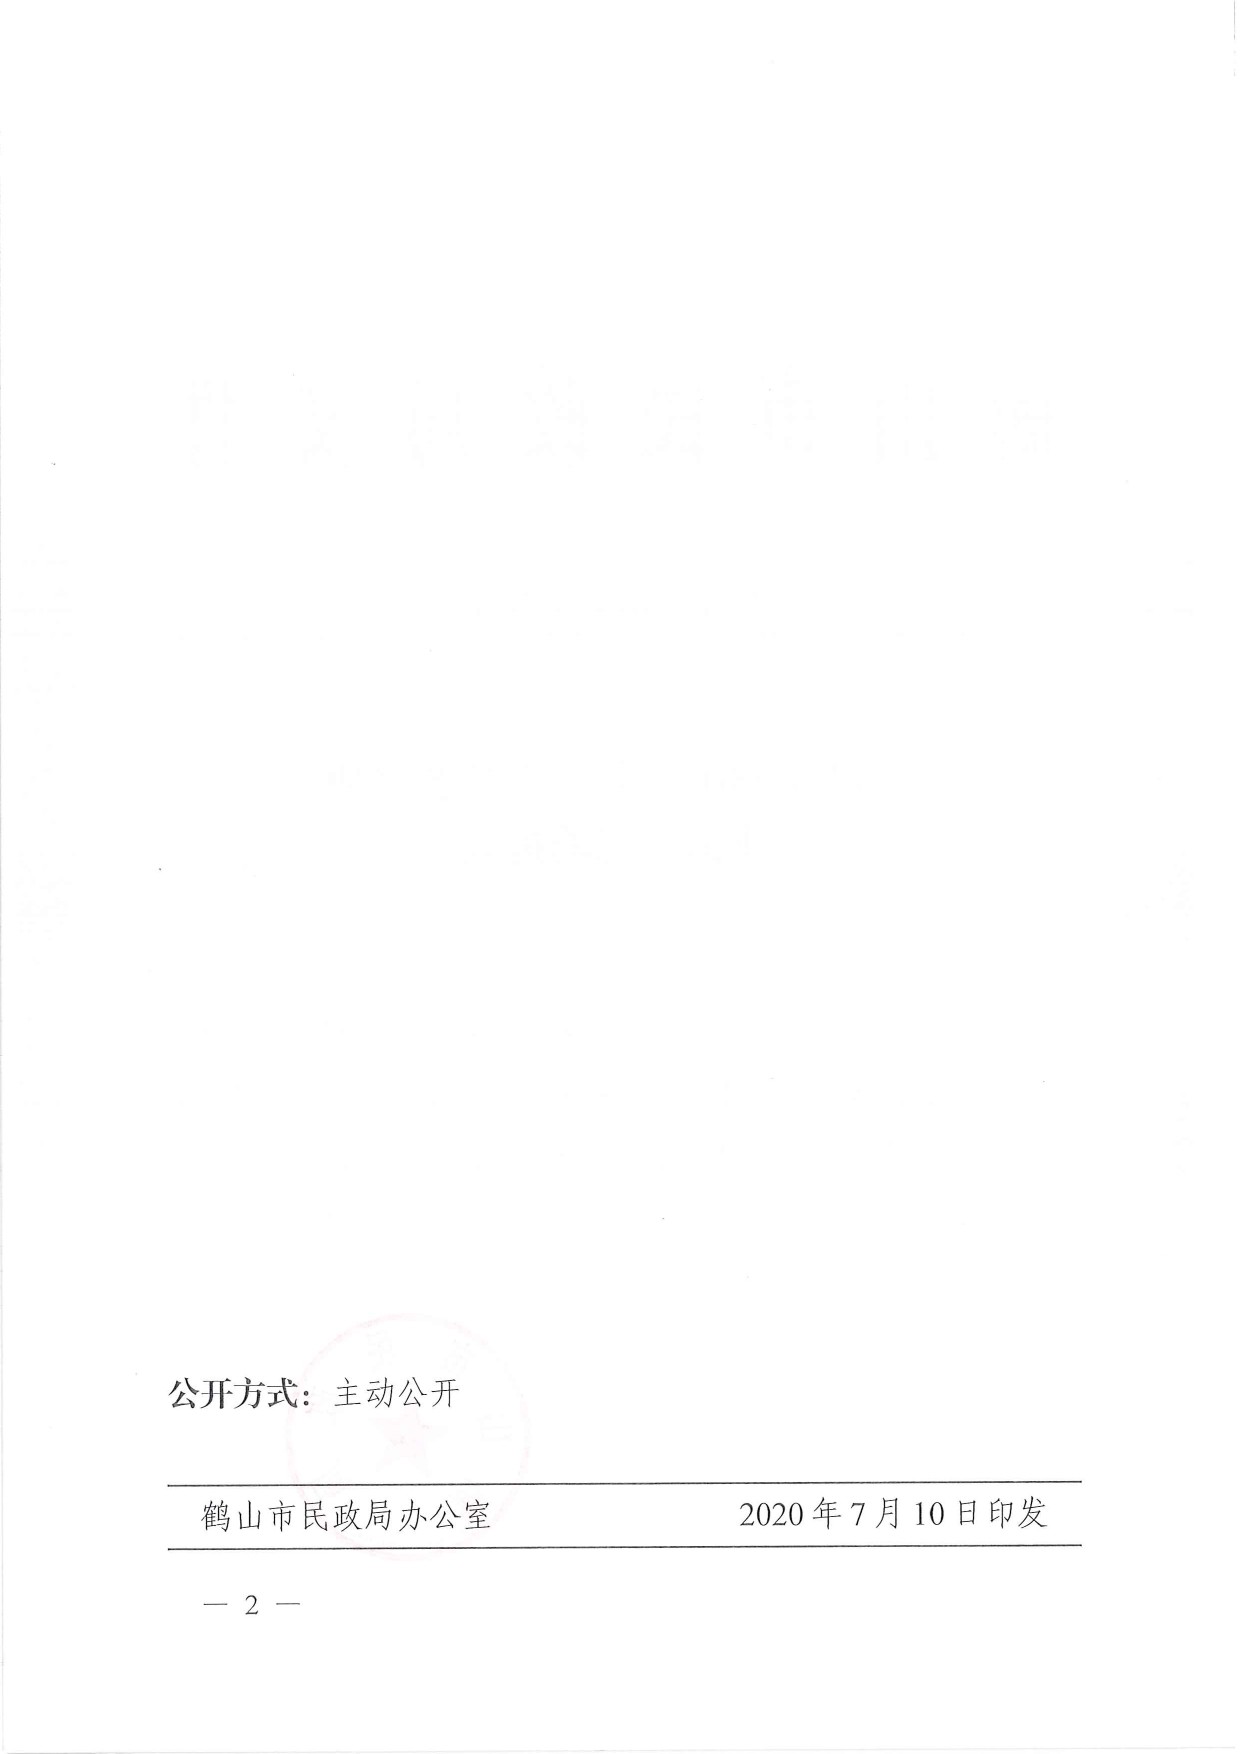 鹤民社〔2020〕33号关于准予鹤山市职工文化艺术协会注销登记的批复-2.jpg